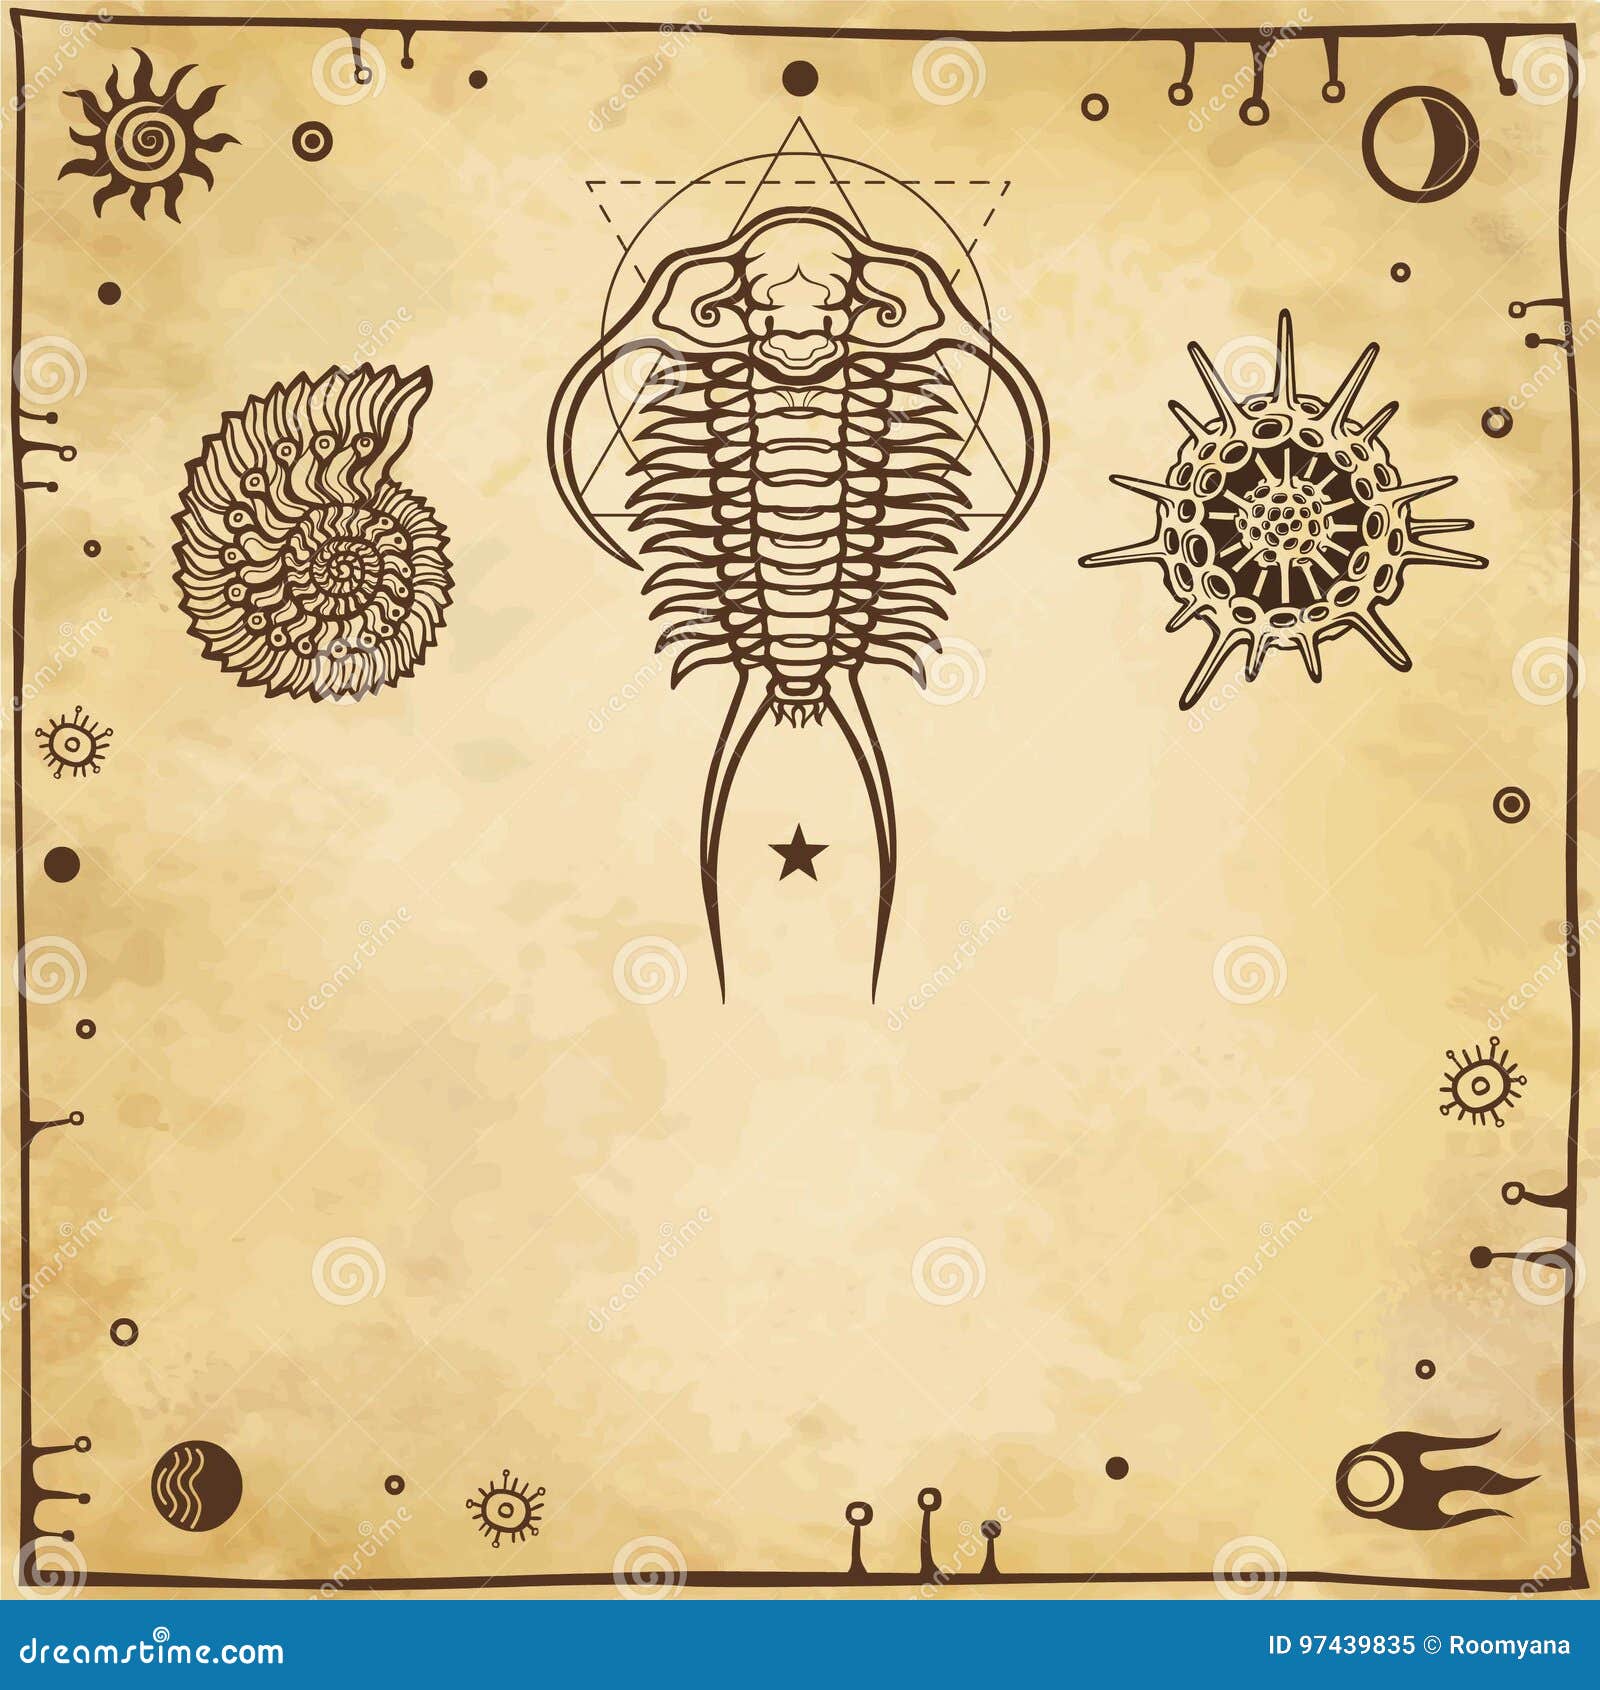 image of ancient marine organisms: trilobit, mollusk, radiolaria.